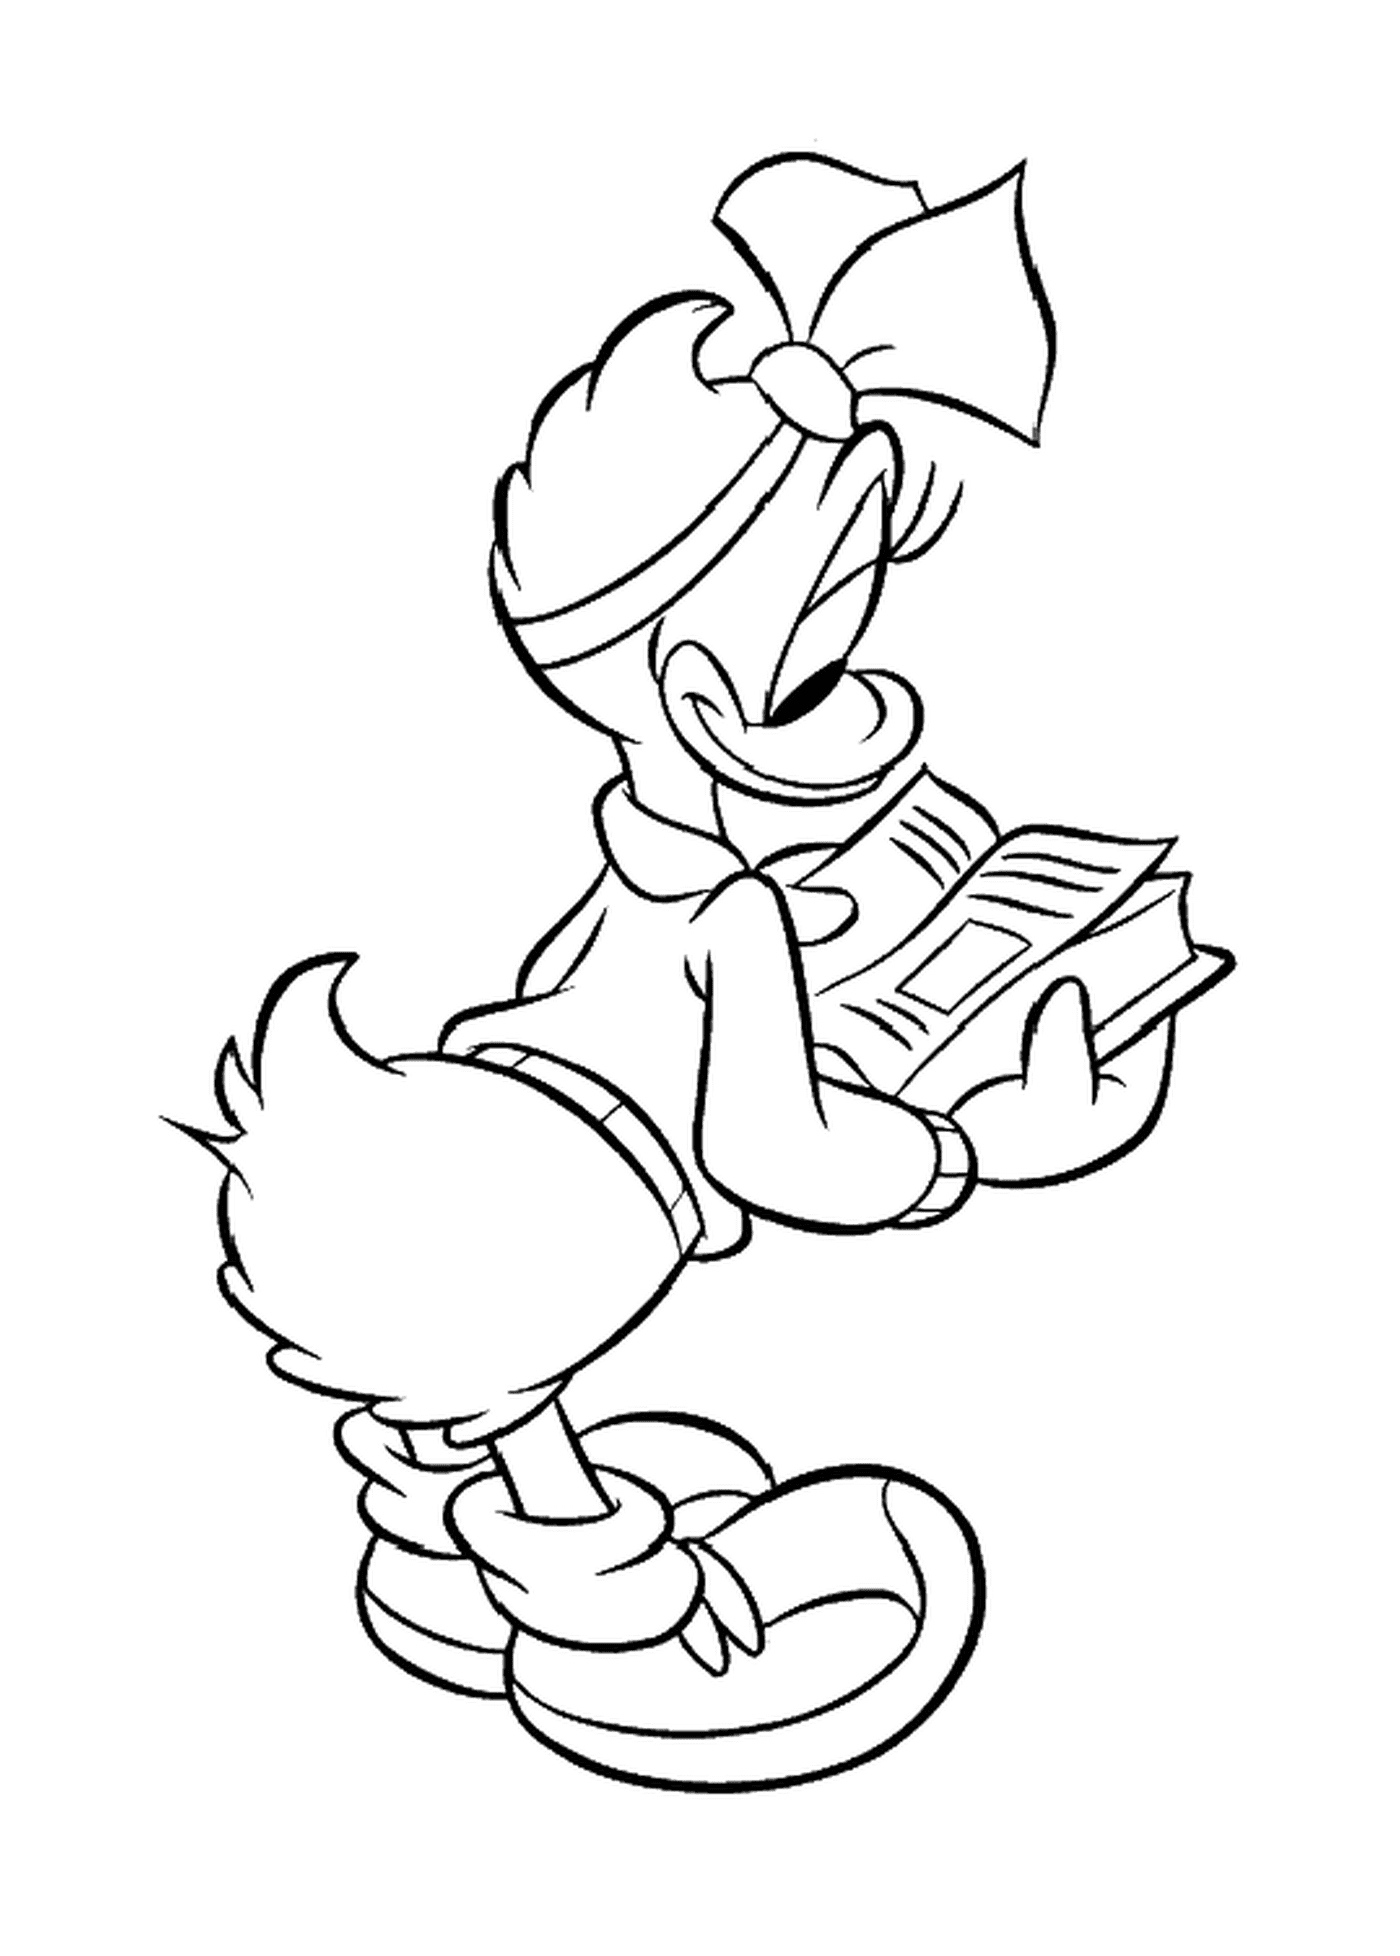  Daisy lê um livro da Disney 